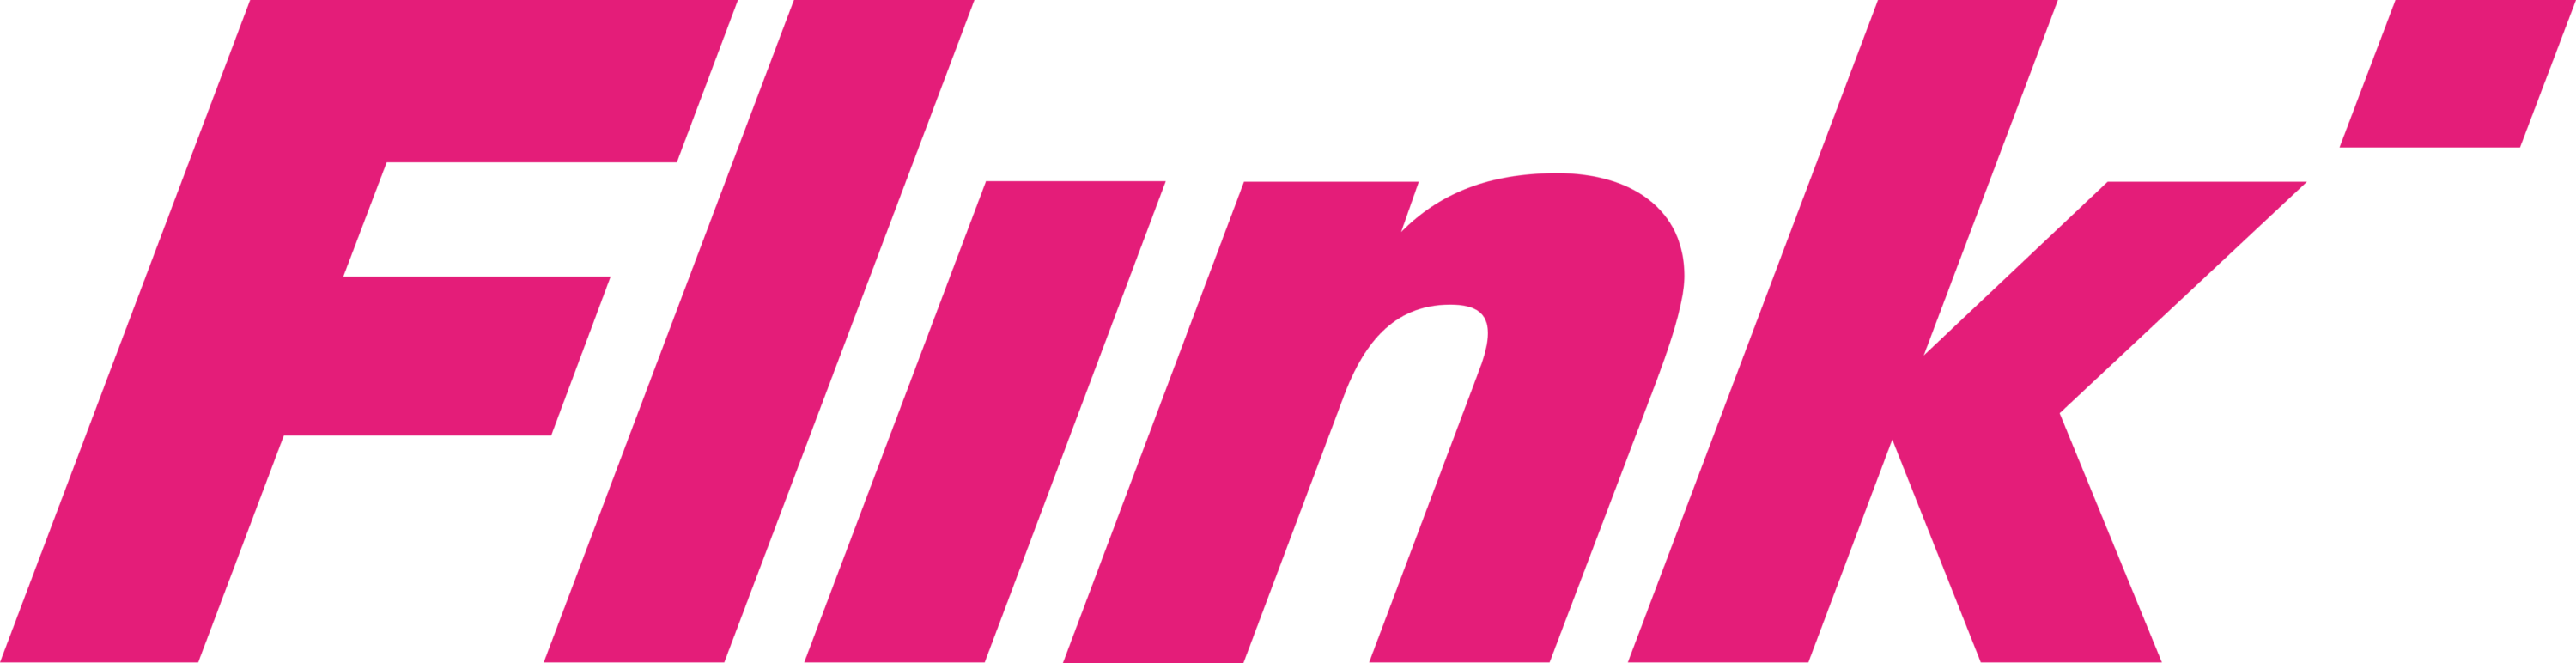 Flink Delivery Logo